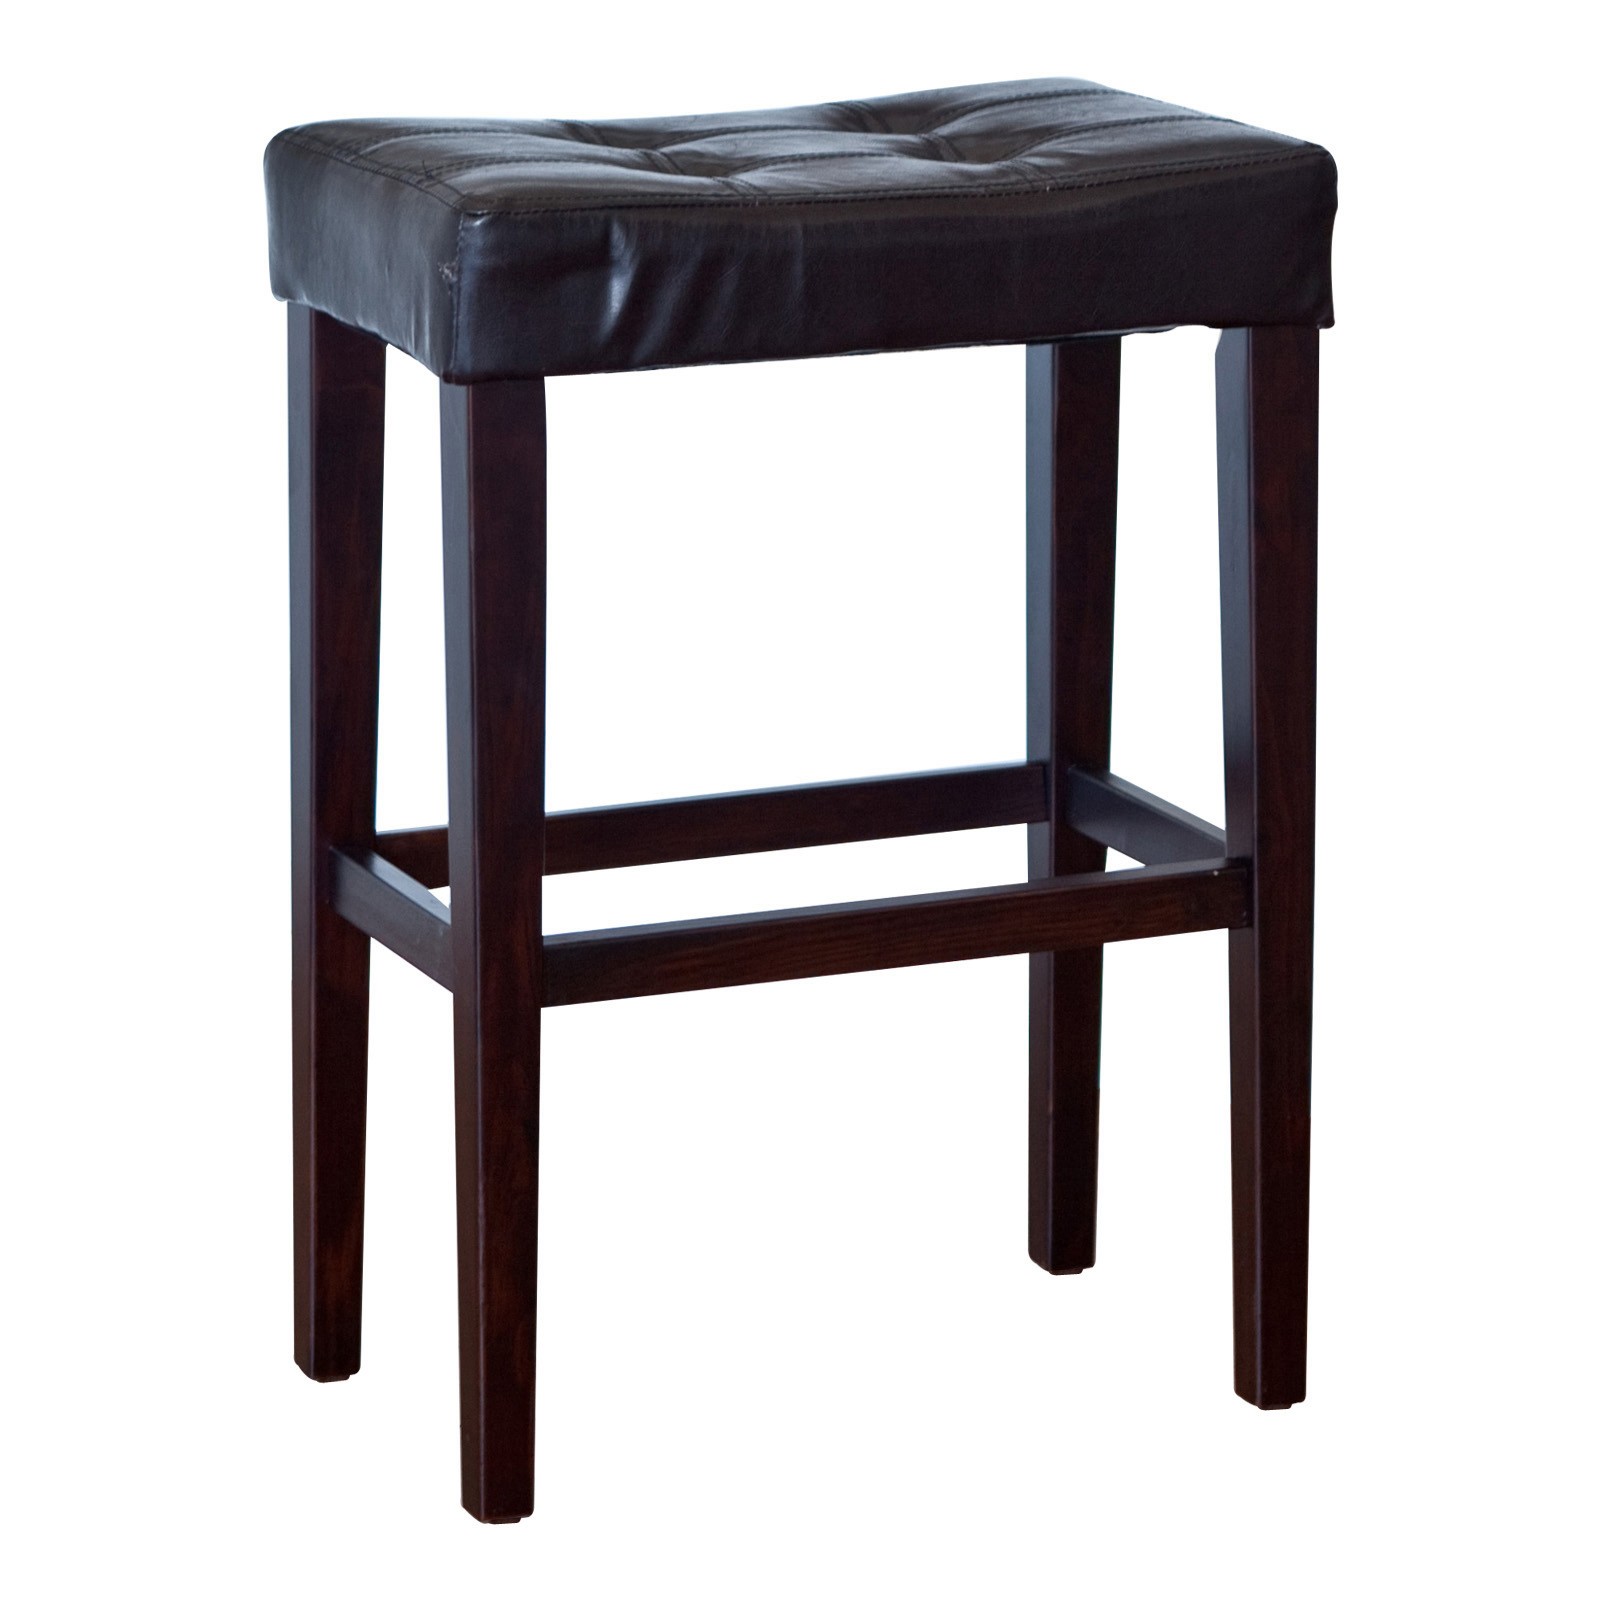 Palazzo 29 inch saddle bar stool black bar stools at